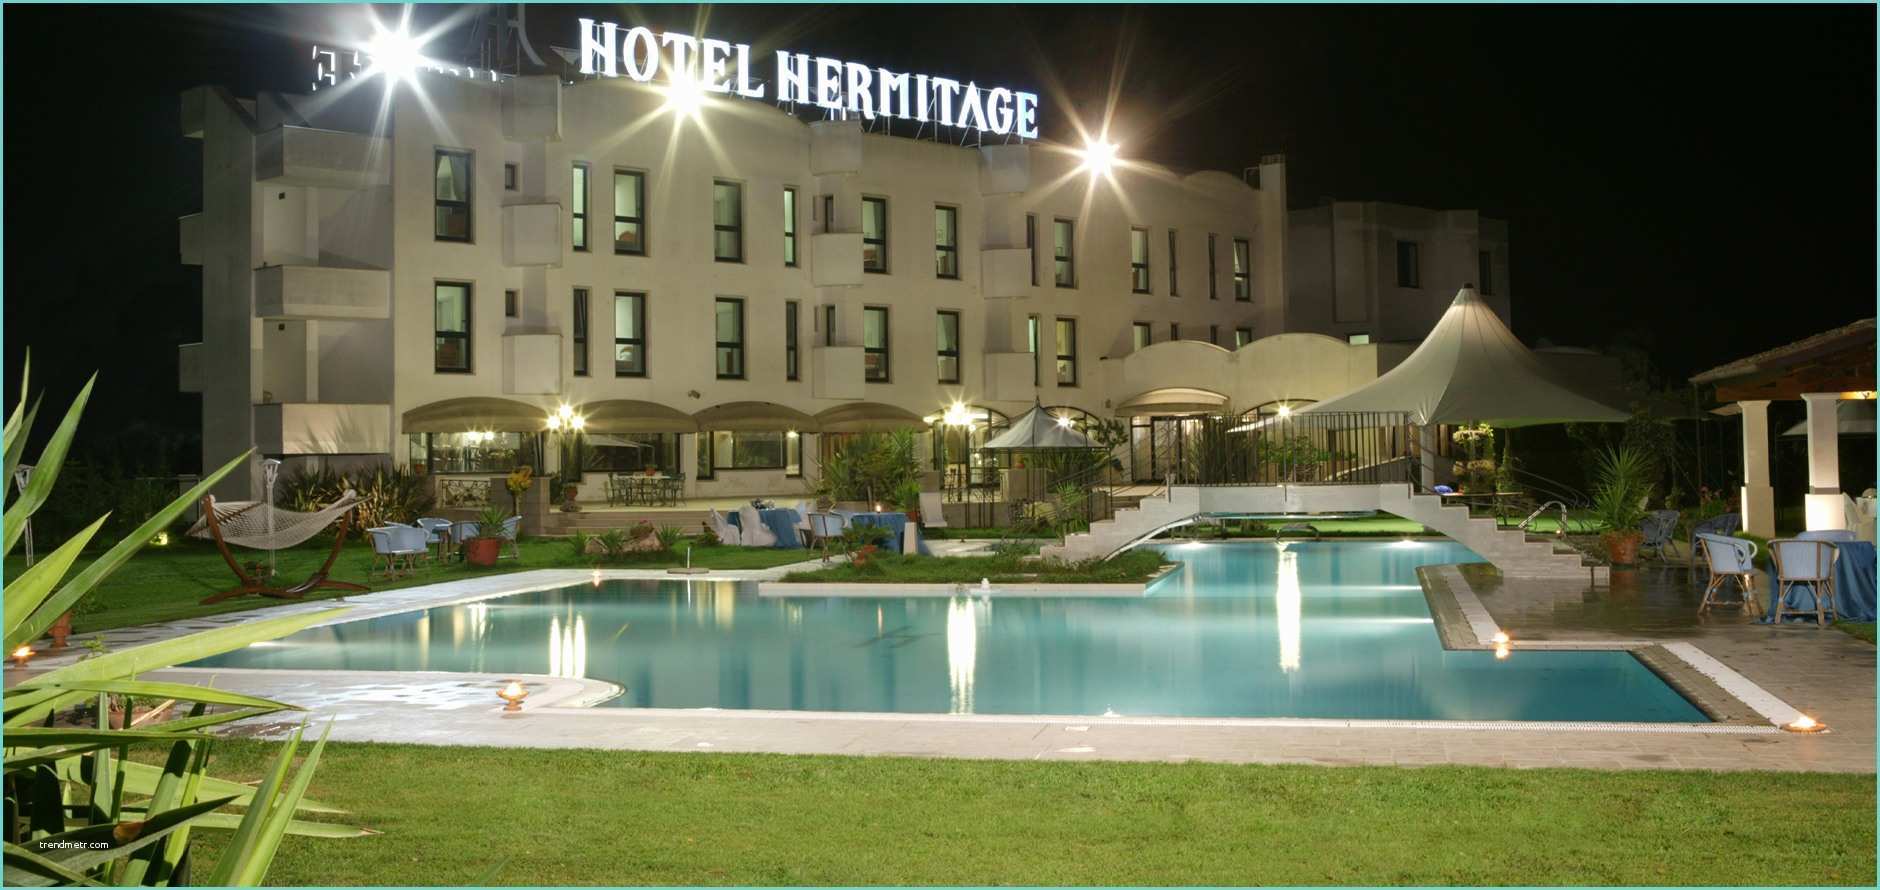 Receveur De Douche 180x90 Leroy Merlin Hotel R Best Hotel Deal 28 Images Hotel R Best Hotel